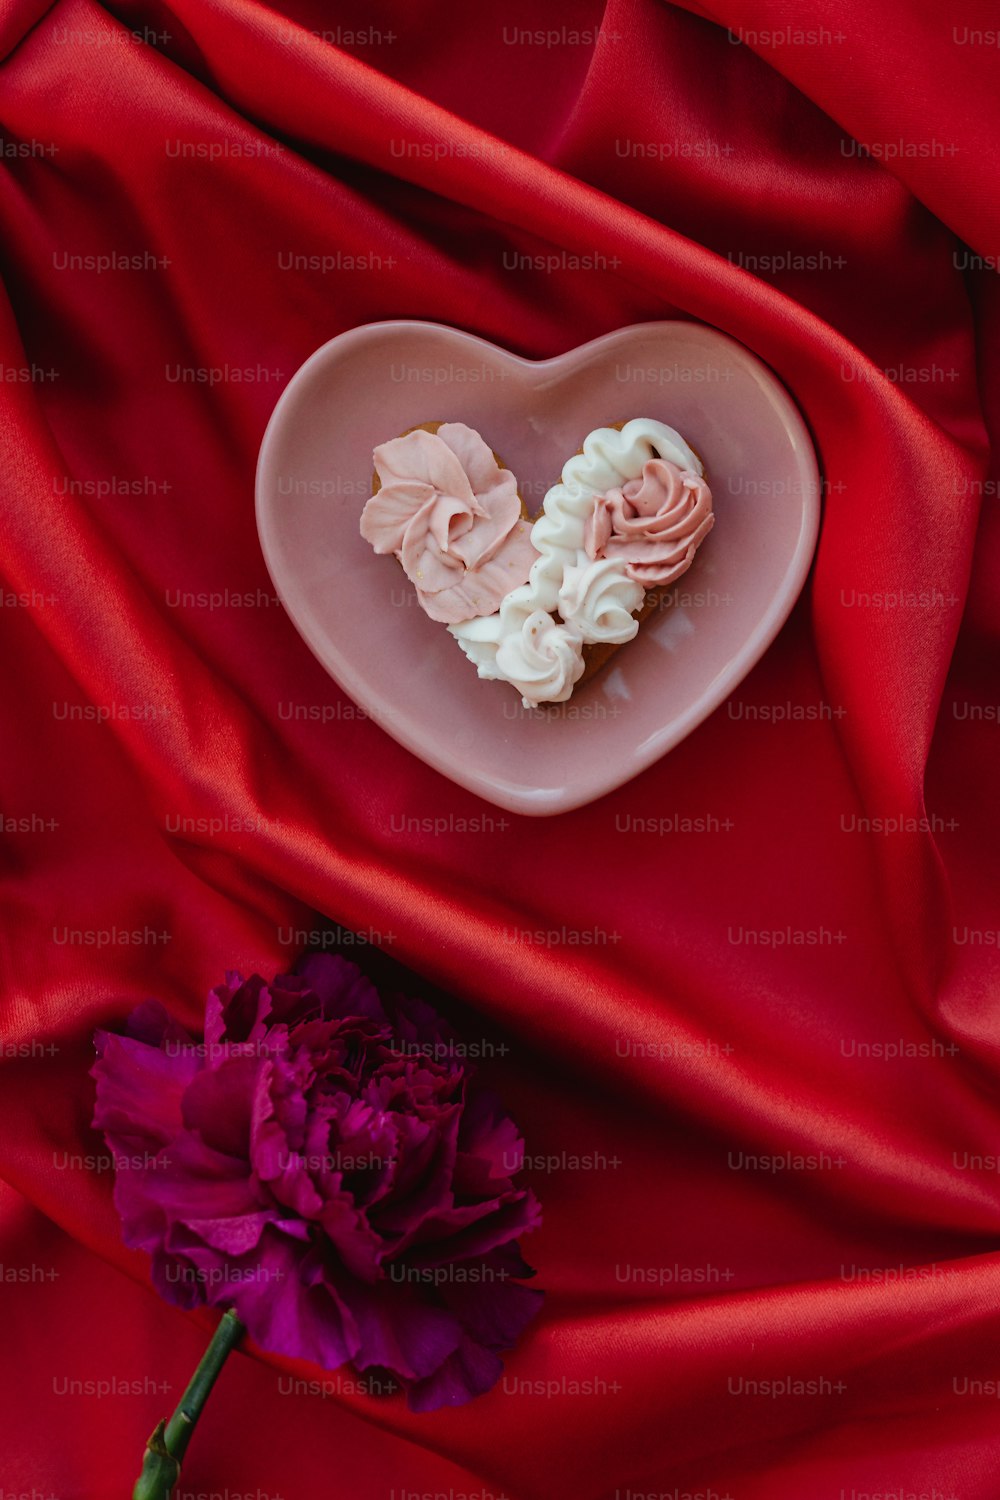 un piatto a forma di cuore con fiori su un panno rosso